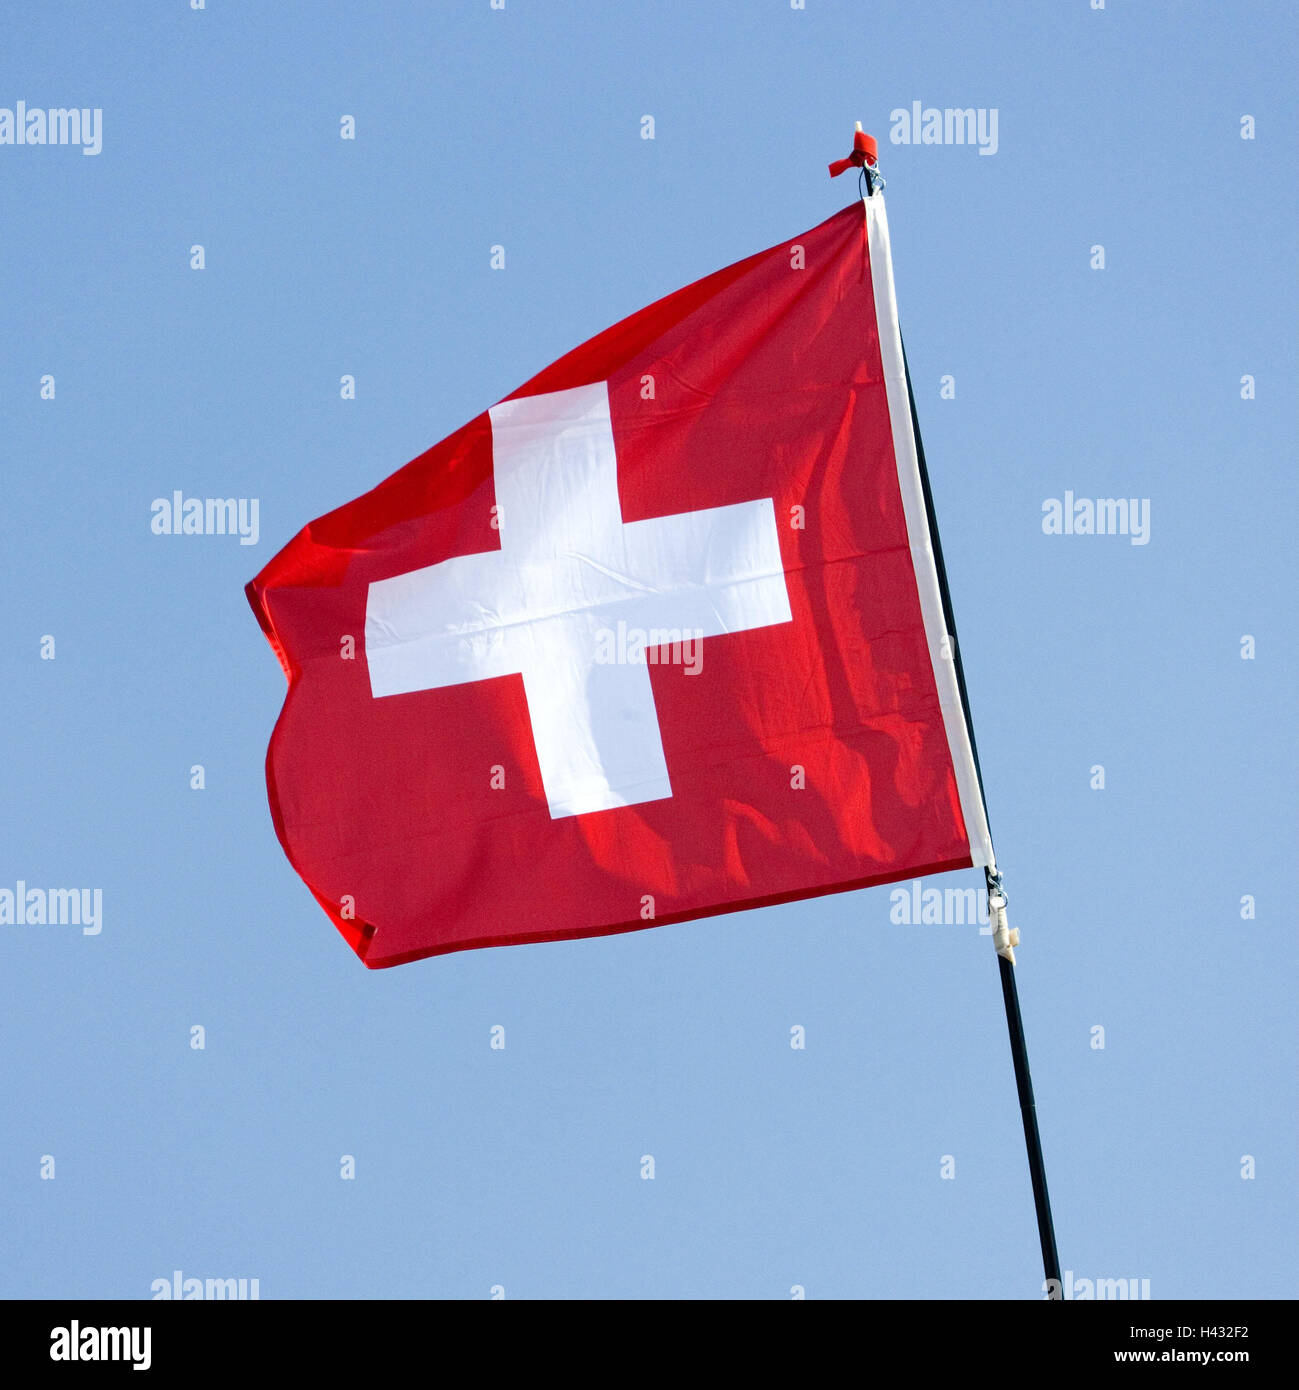 Flag, Switzerland, Europe, flagpole, mast, flag, national flag, national flag, national colors, red, white, cross, wind, wave, sky, blue, patriotism, product photography, Stock Photo